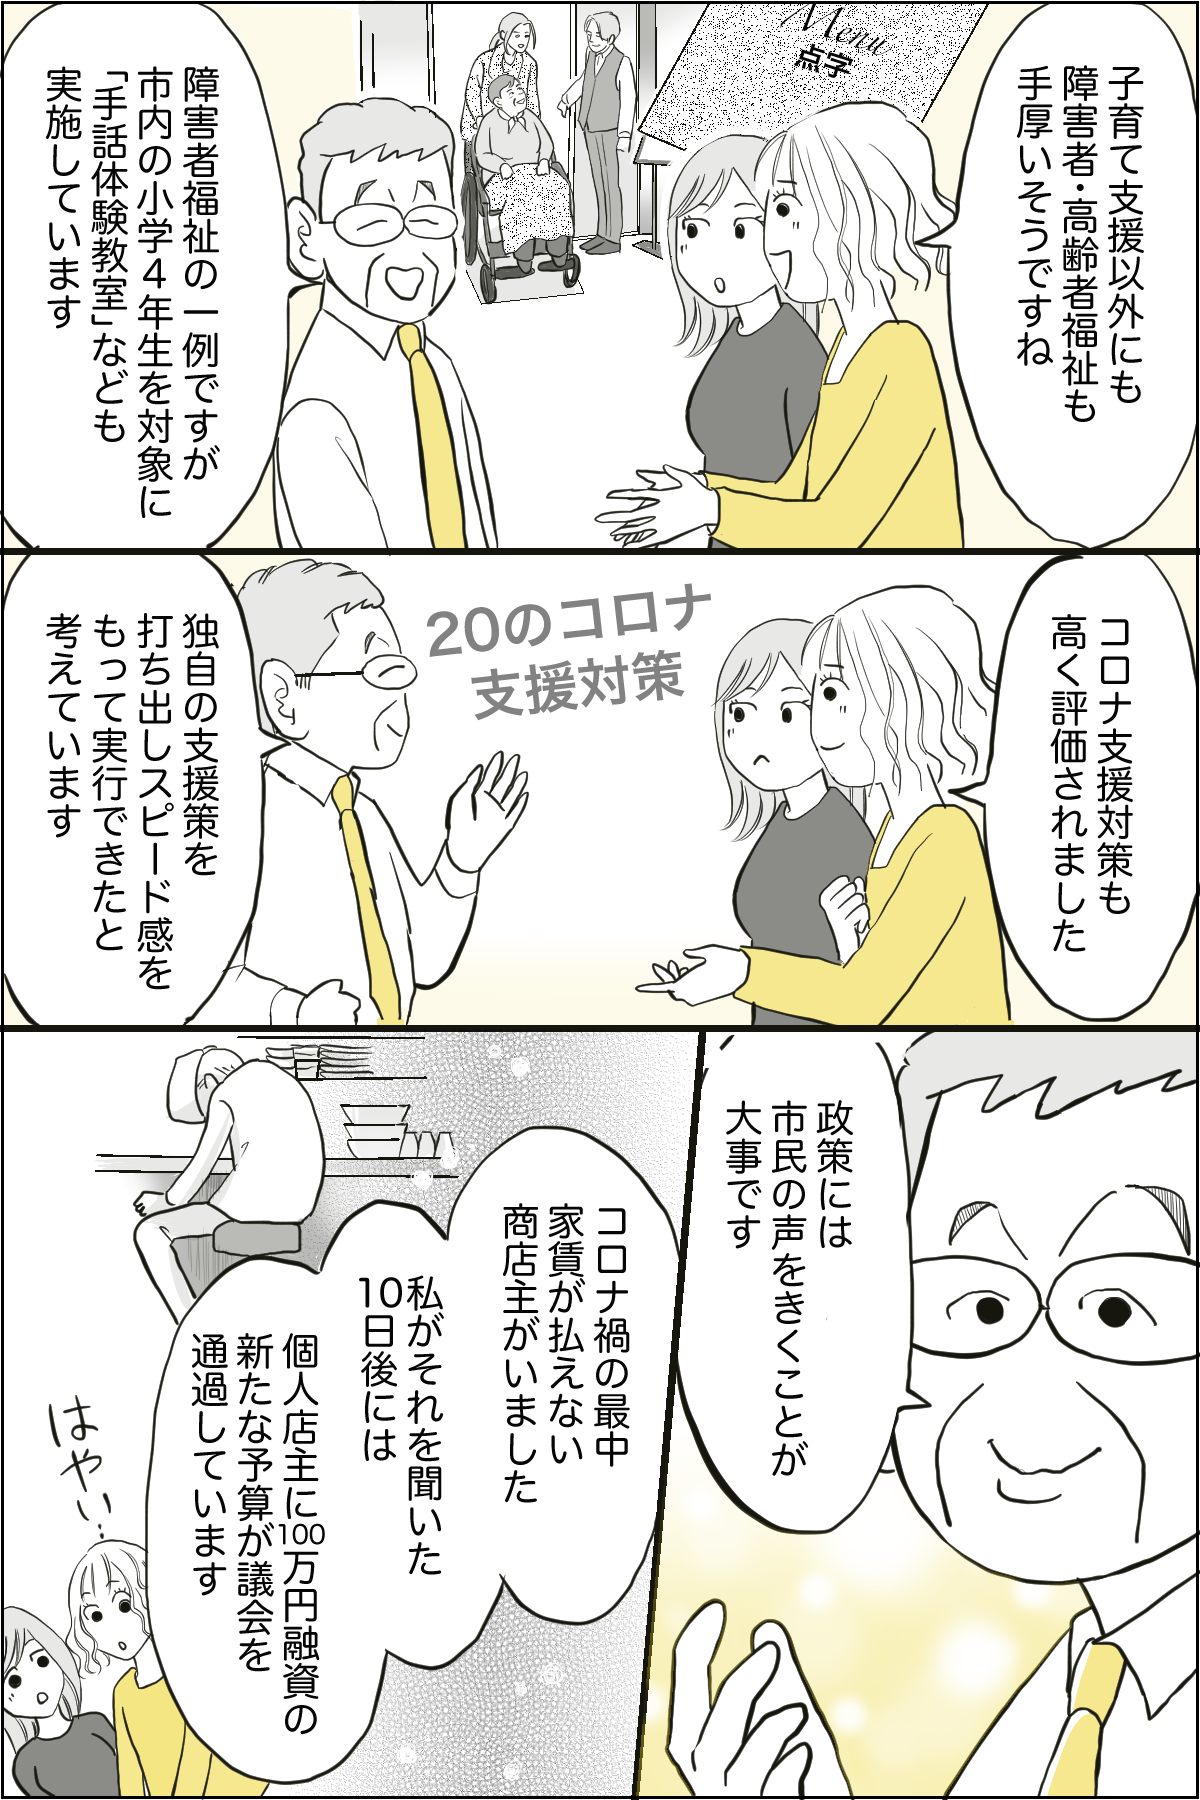 泉市長記事漫画化_出力_007